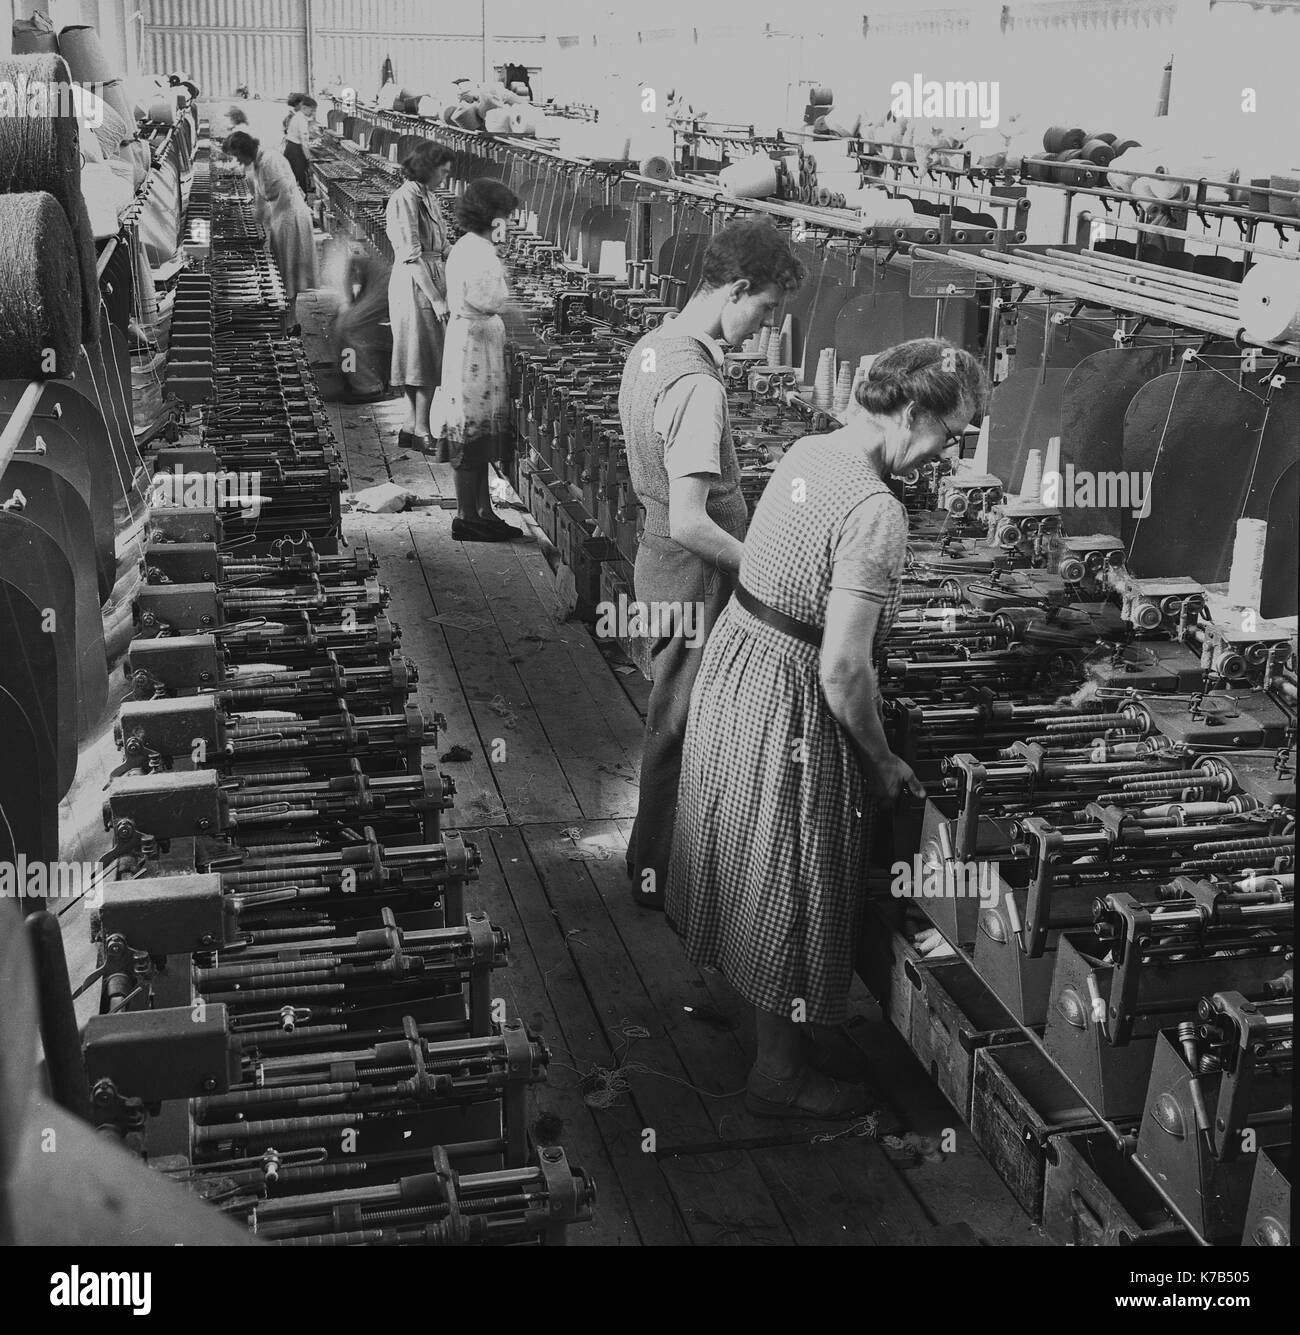 Années 1950, historiques, tisserands irlandais, les femmes qui travaillent debout sur un plancher de bois à l'aide de métiers, de linge mécanisée d'Irlande du Nord. Banque D'Images